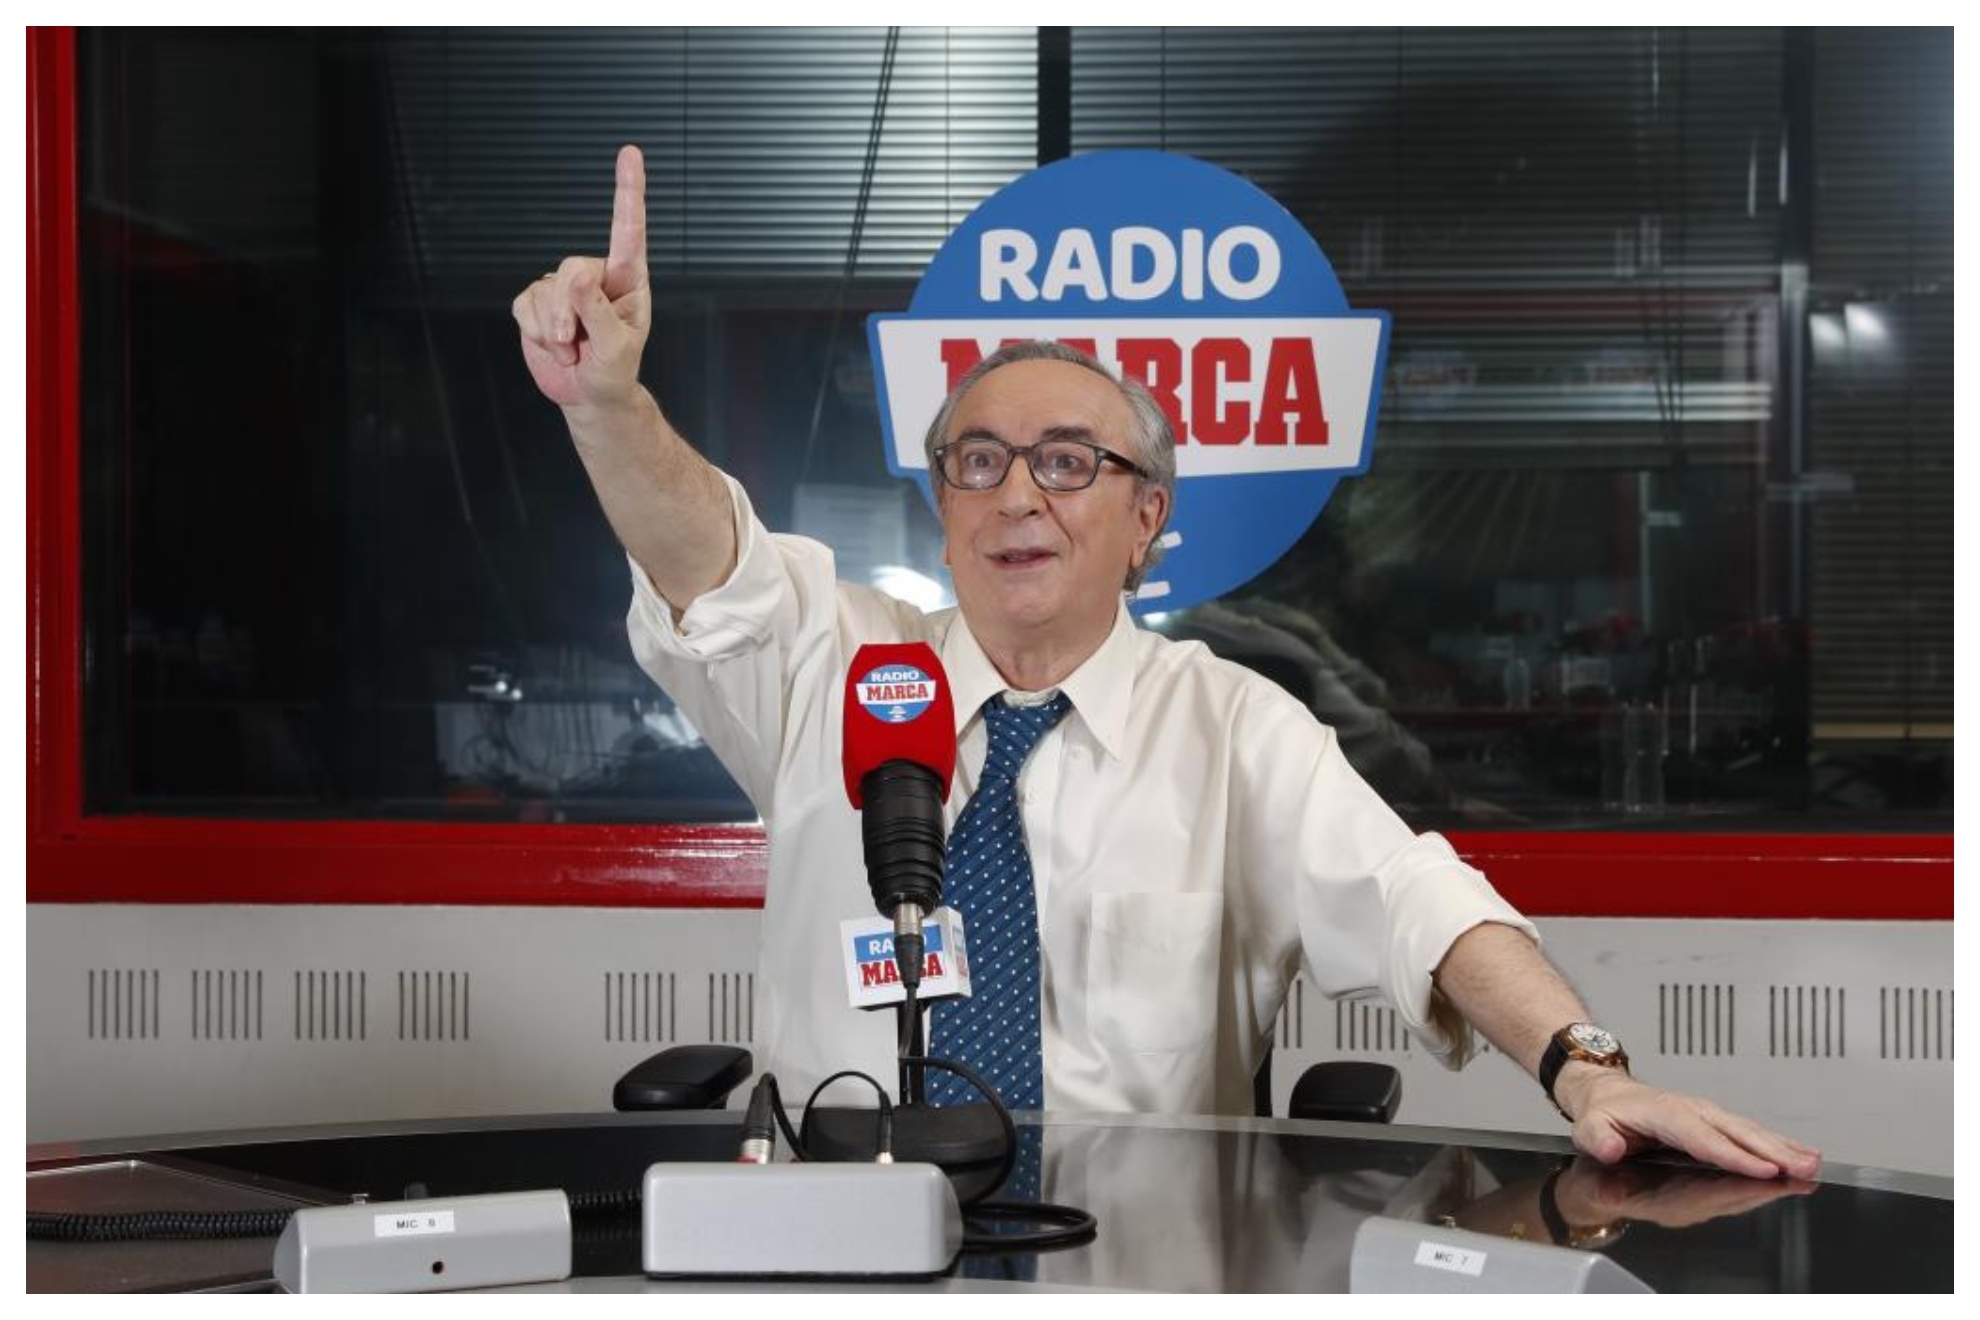 Pedro Pablo Parrado, en los estudios de Radio Marca, realizando su programa 'Goles'